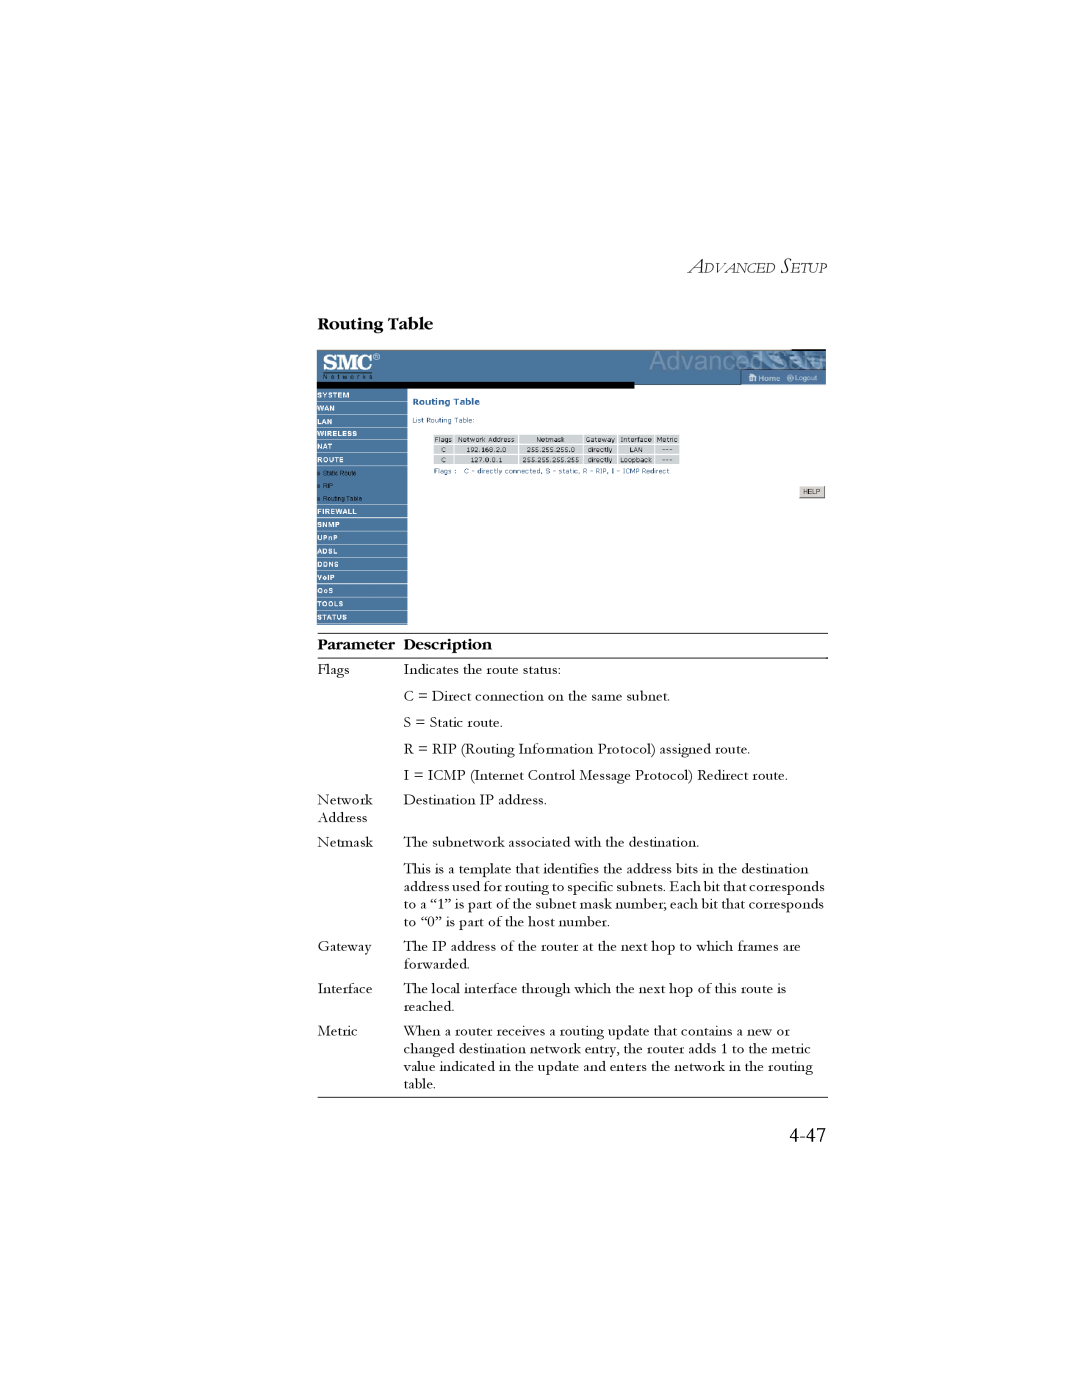 SMC Networks SMC7908VoWBRA manual 4-47, Routing Table, Parameter Description 